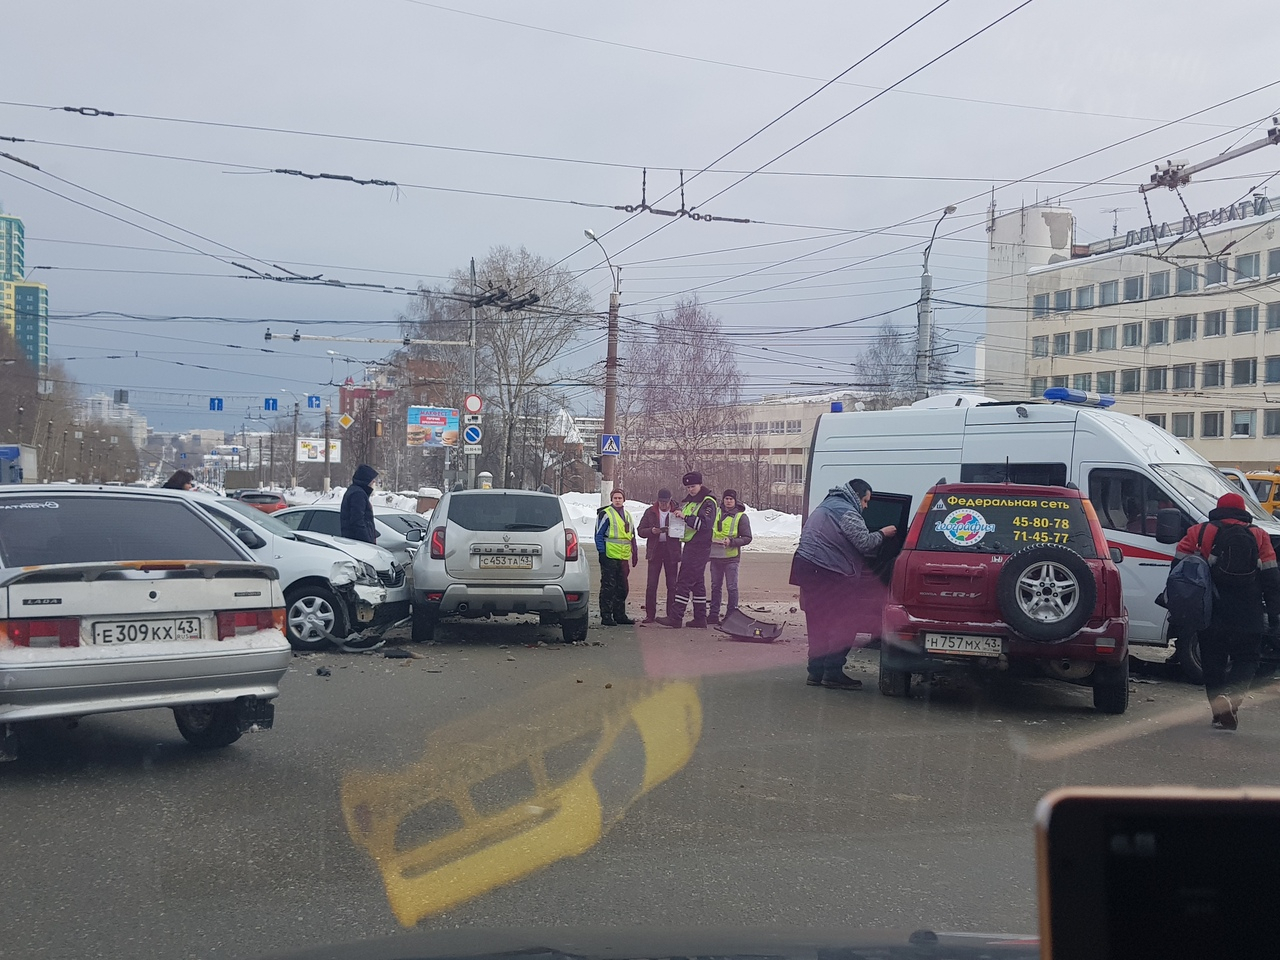 Видео: в Кирове произошло массовое ДТП с участием машины скорой помощи